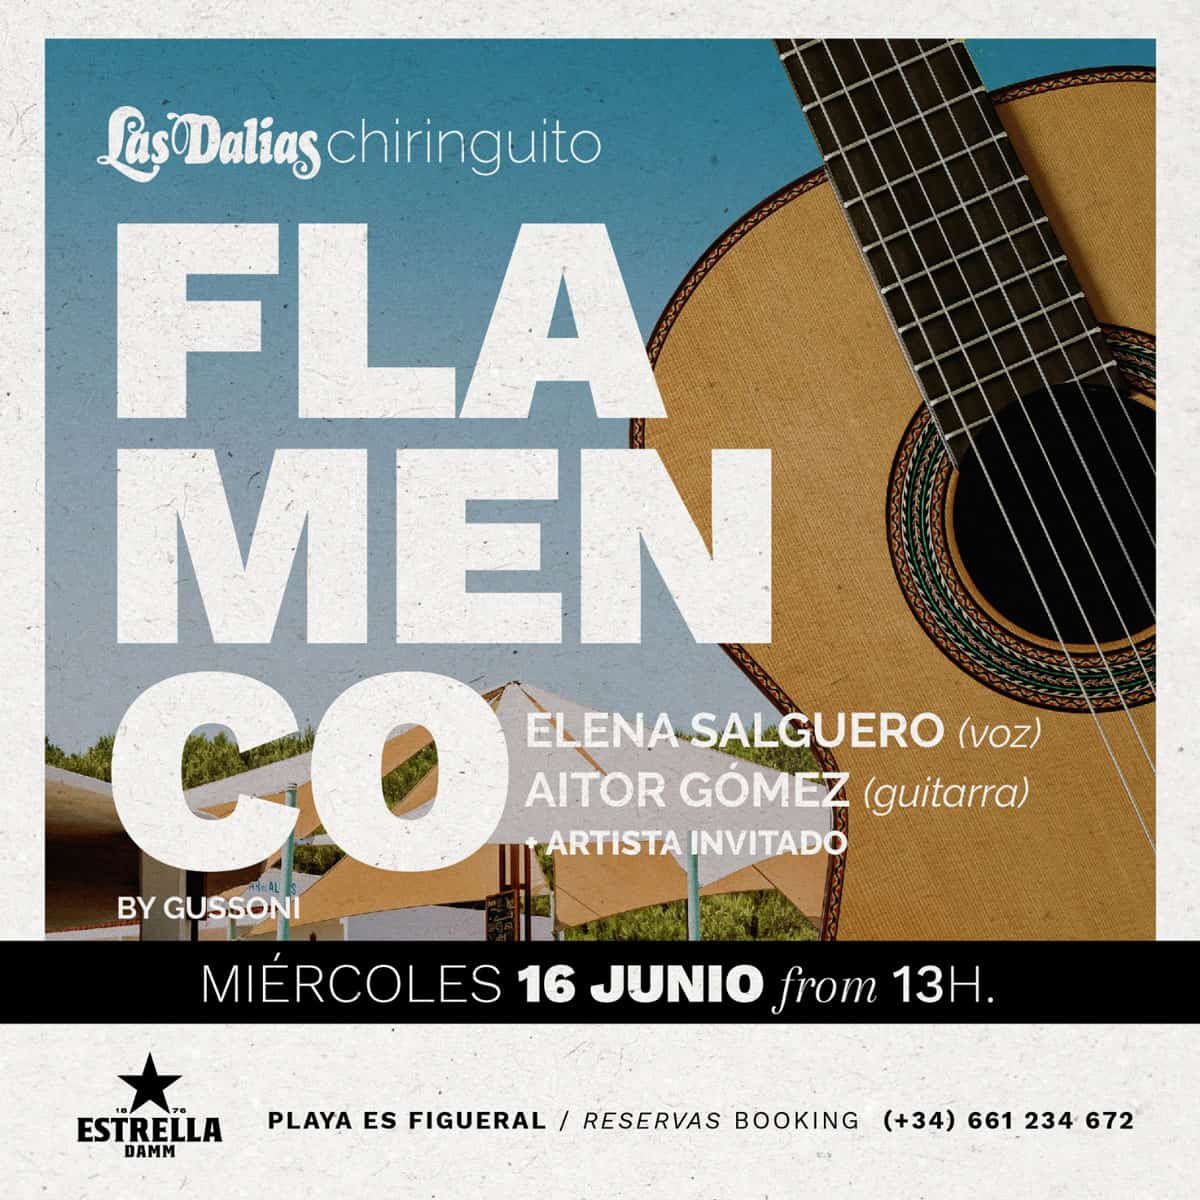 flamenco-chiringuito-las-dalias-ibiza-2021-welcometoibiza